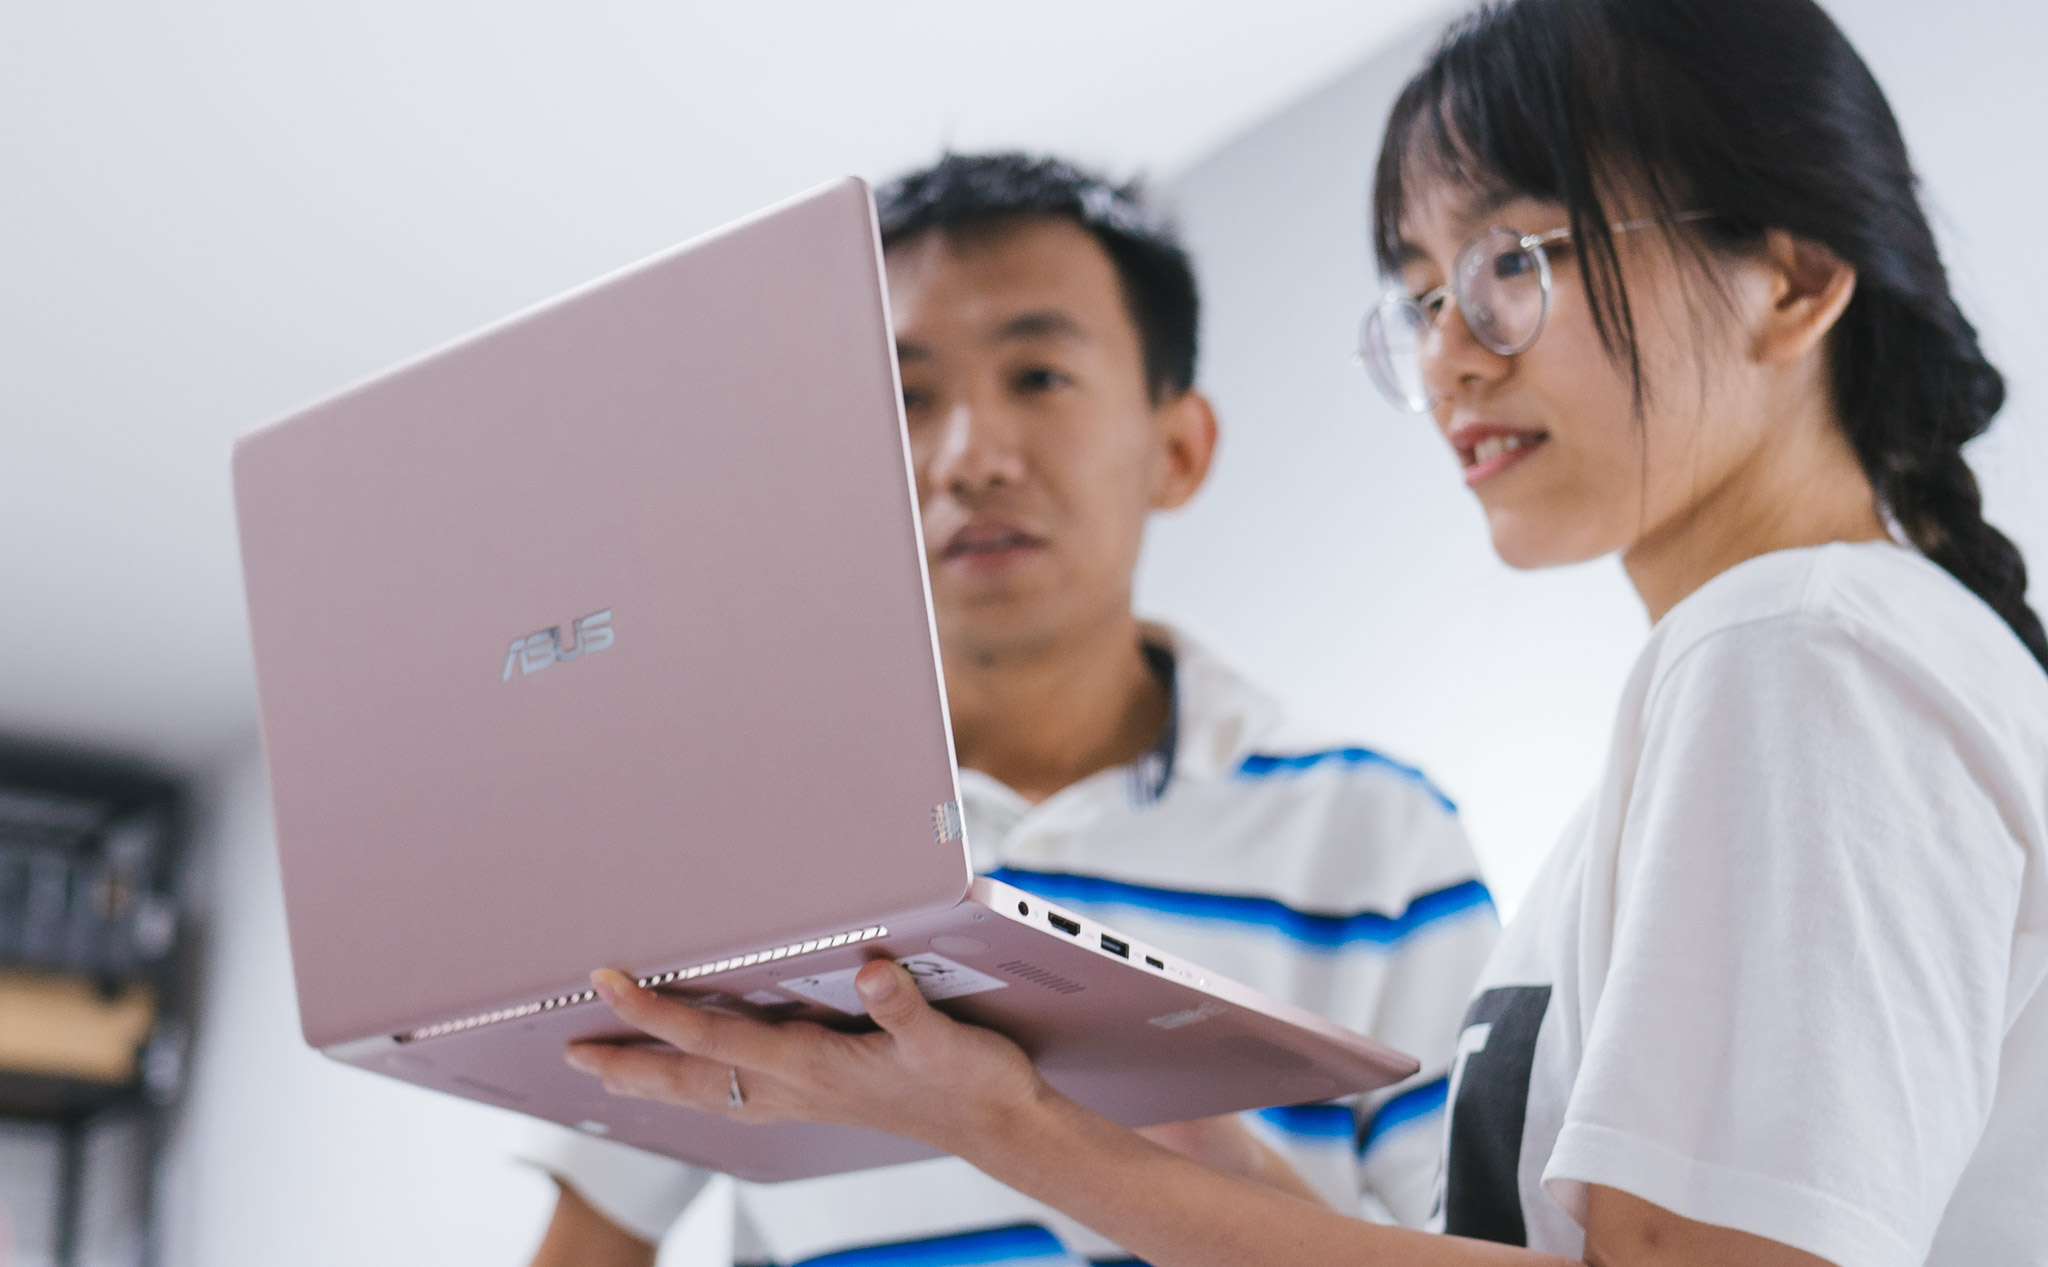 Cảm nhận ASUS ZenBook 13: Xài laptop siêu di động cho cuộc đời thêm nhẹ nhàng